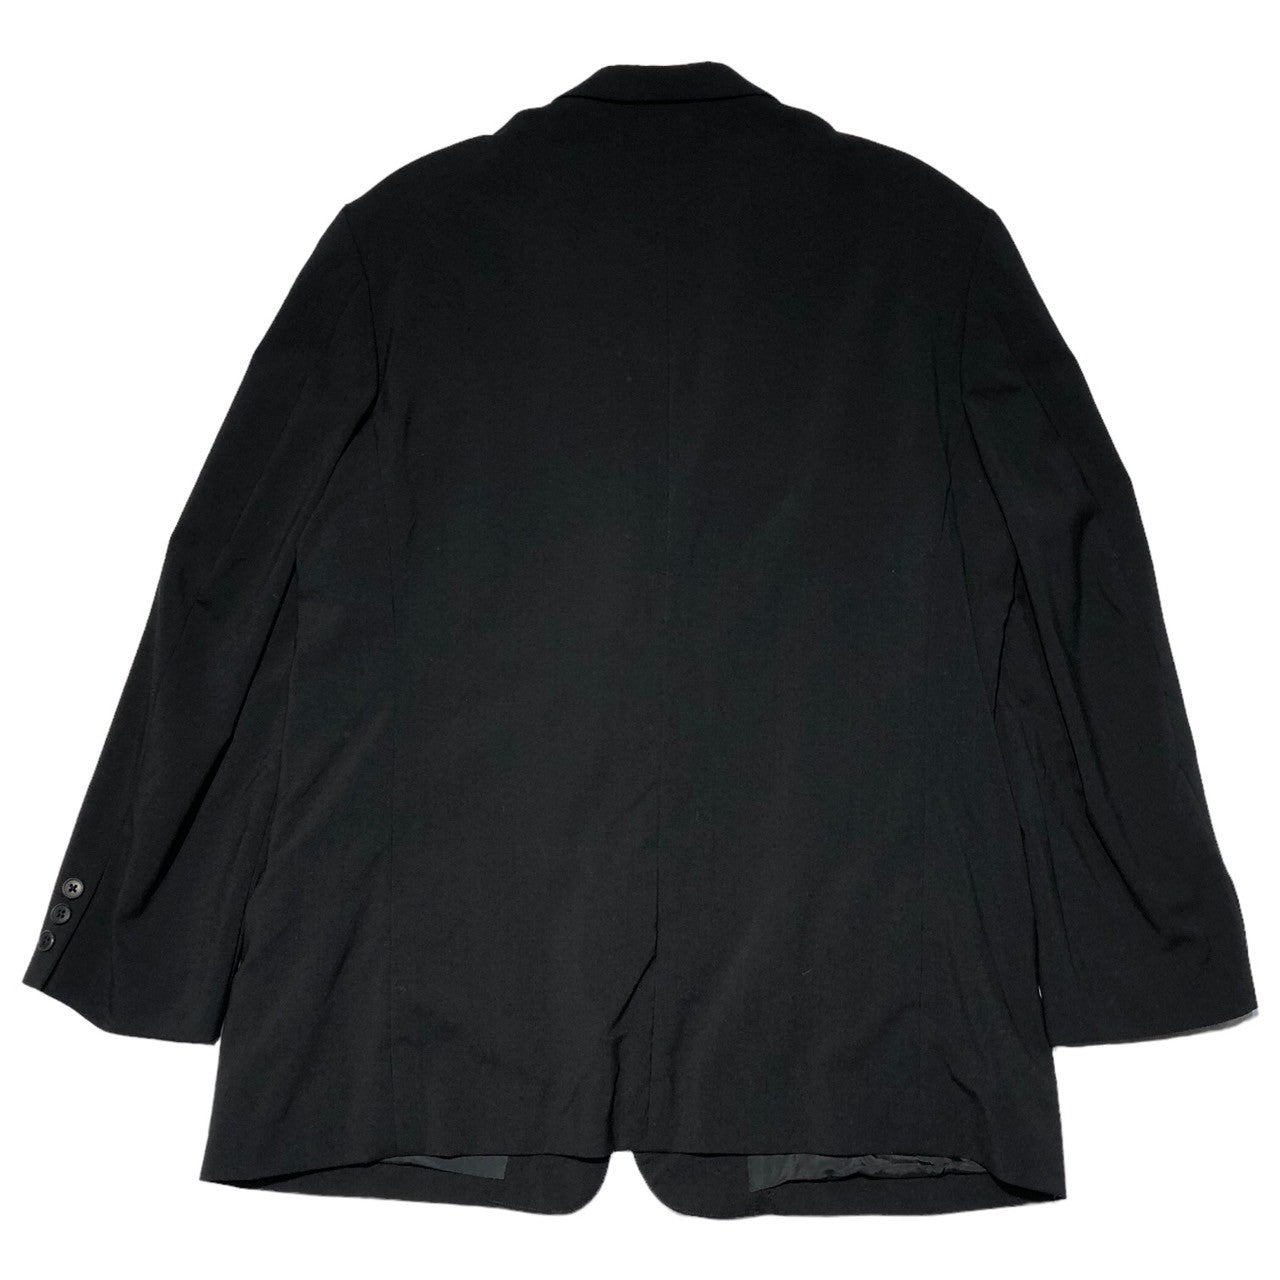 Y's for men(ワイズフォーメン) 93SS wool gabardine set up suit ウール ギャバジン セット アップ スーツ MO-J06-103 MO-P04-103 S ブラック ワイド シルエット パンツ テーラード ジャケット